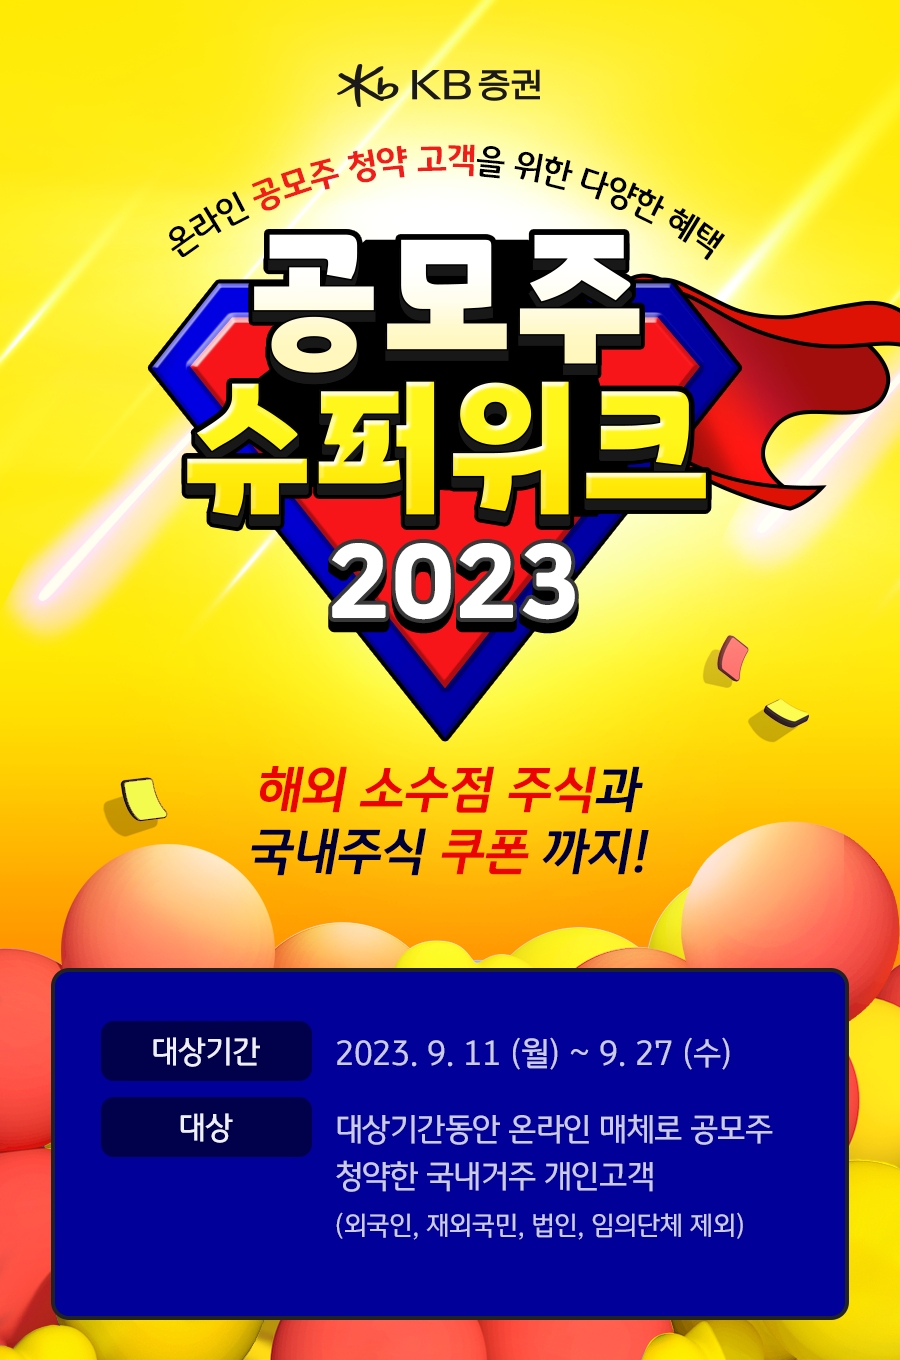 KB증권 ‘공모주 슈퍼위크 2023’ 이벤트 실시